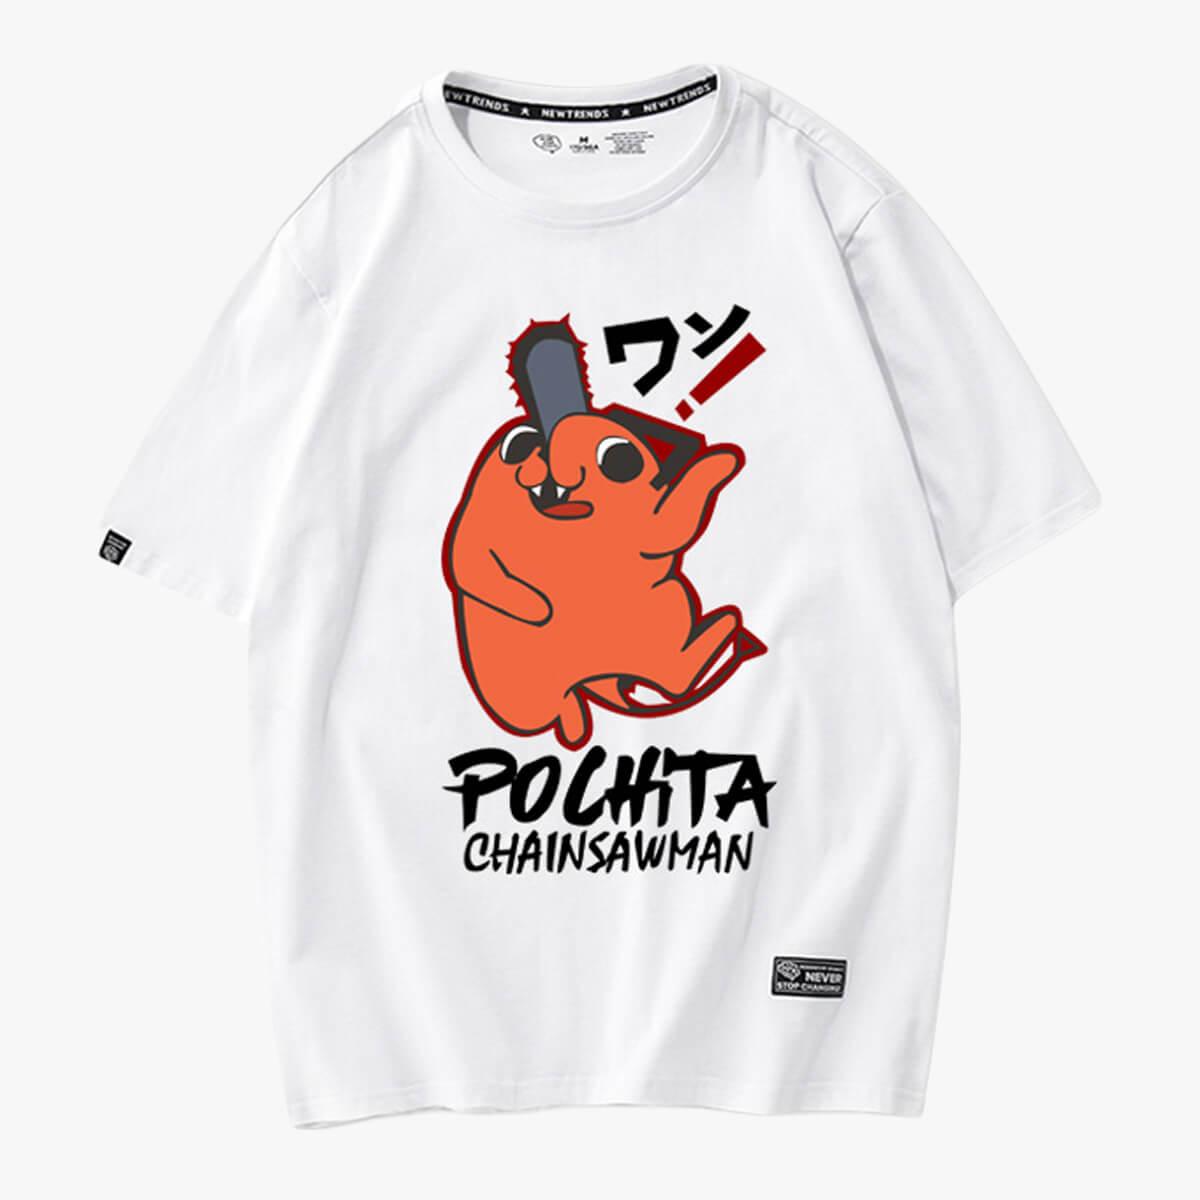 Chainsaw Man Dancing Pochita Cute T-Shirt - Aesthetic Clothes Shop